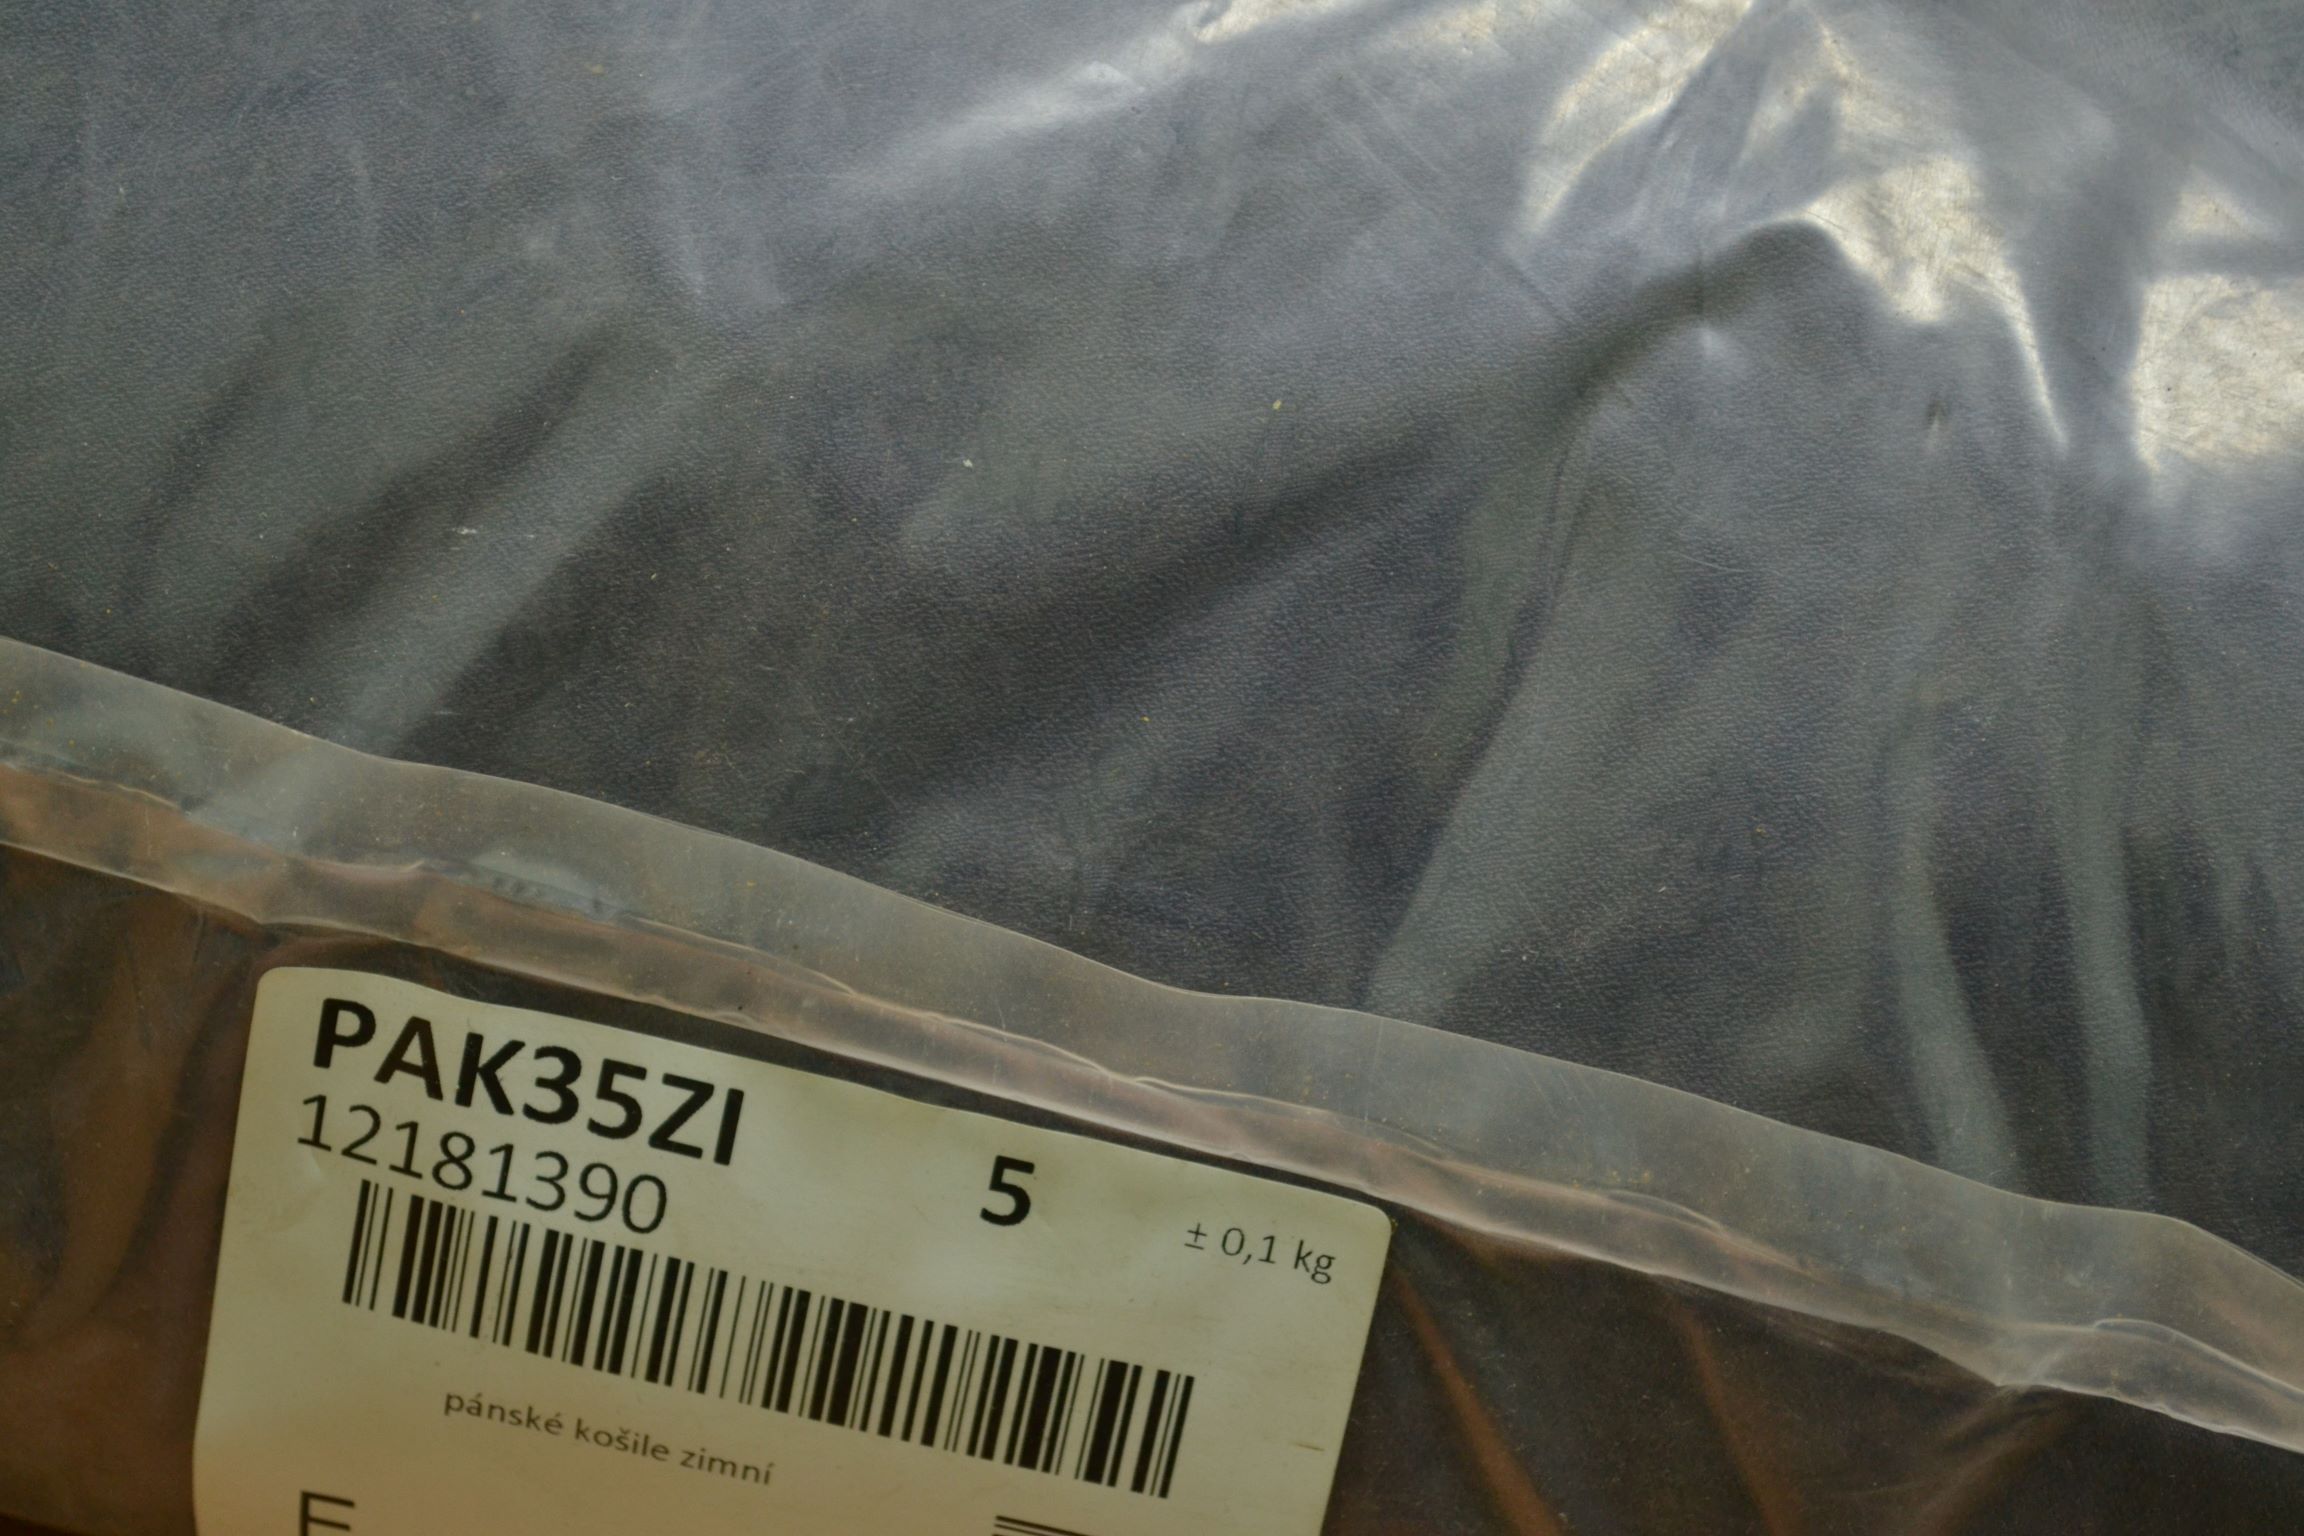 PAK35ZI Мужские рубашки с длинным рукавом;  код мешка12181390